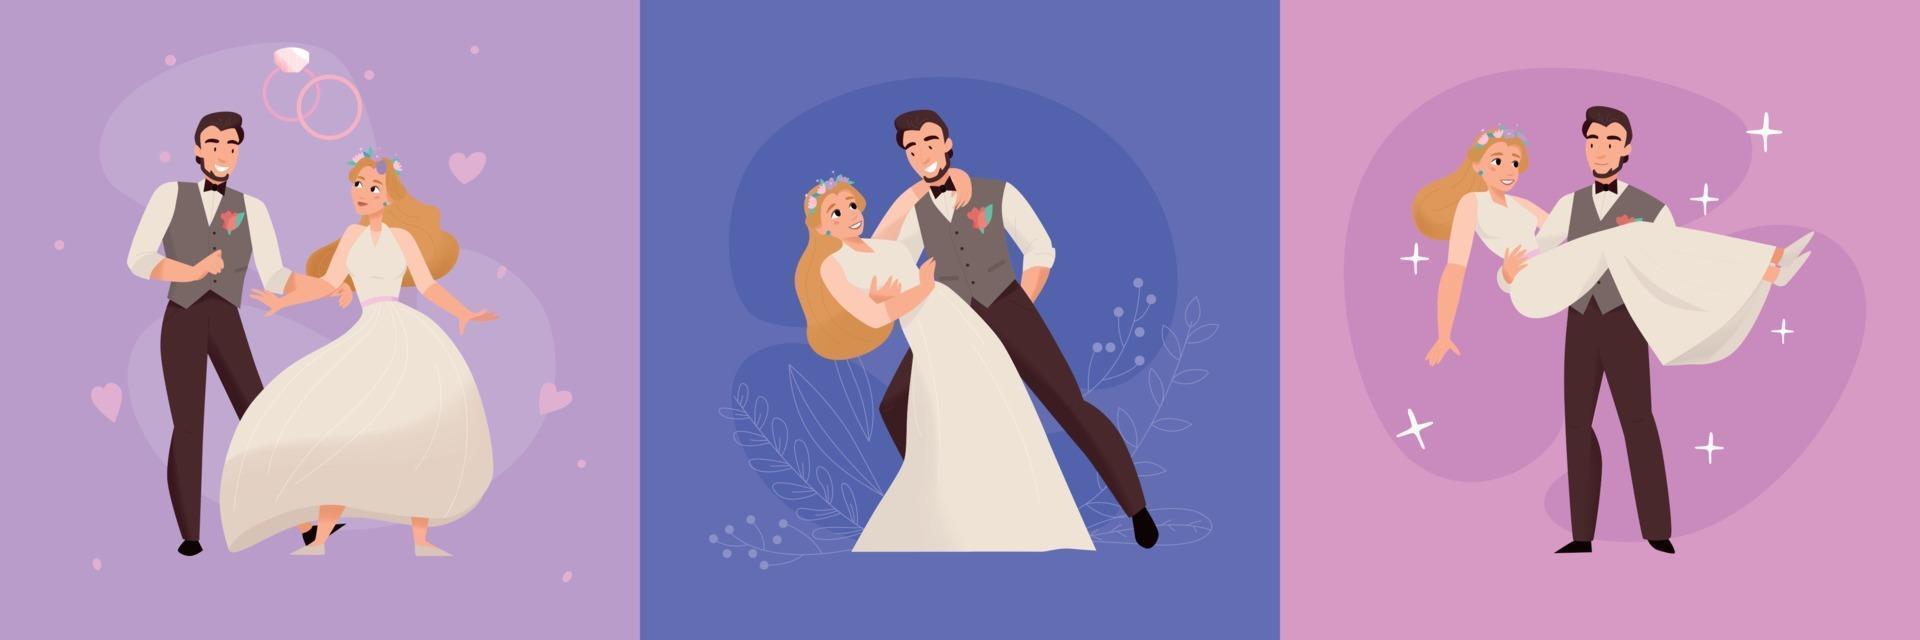 bröllop äktenskap konceptdesign vektor